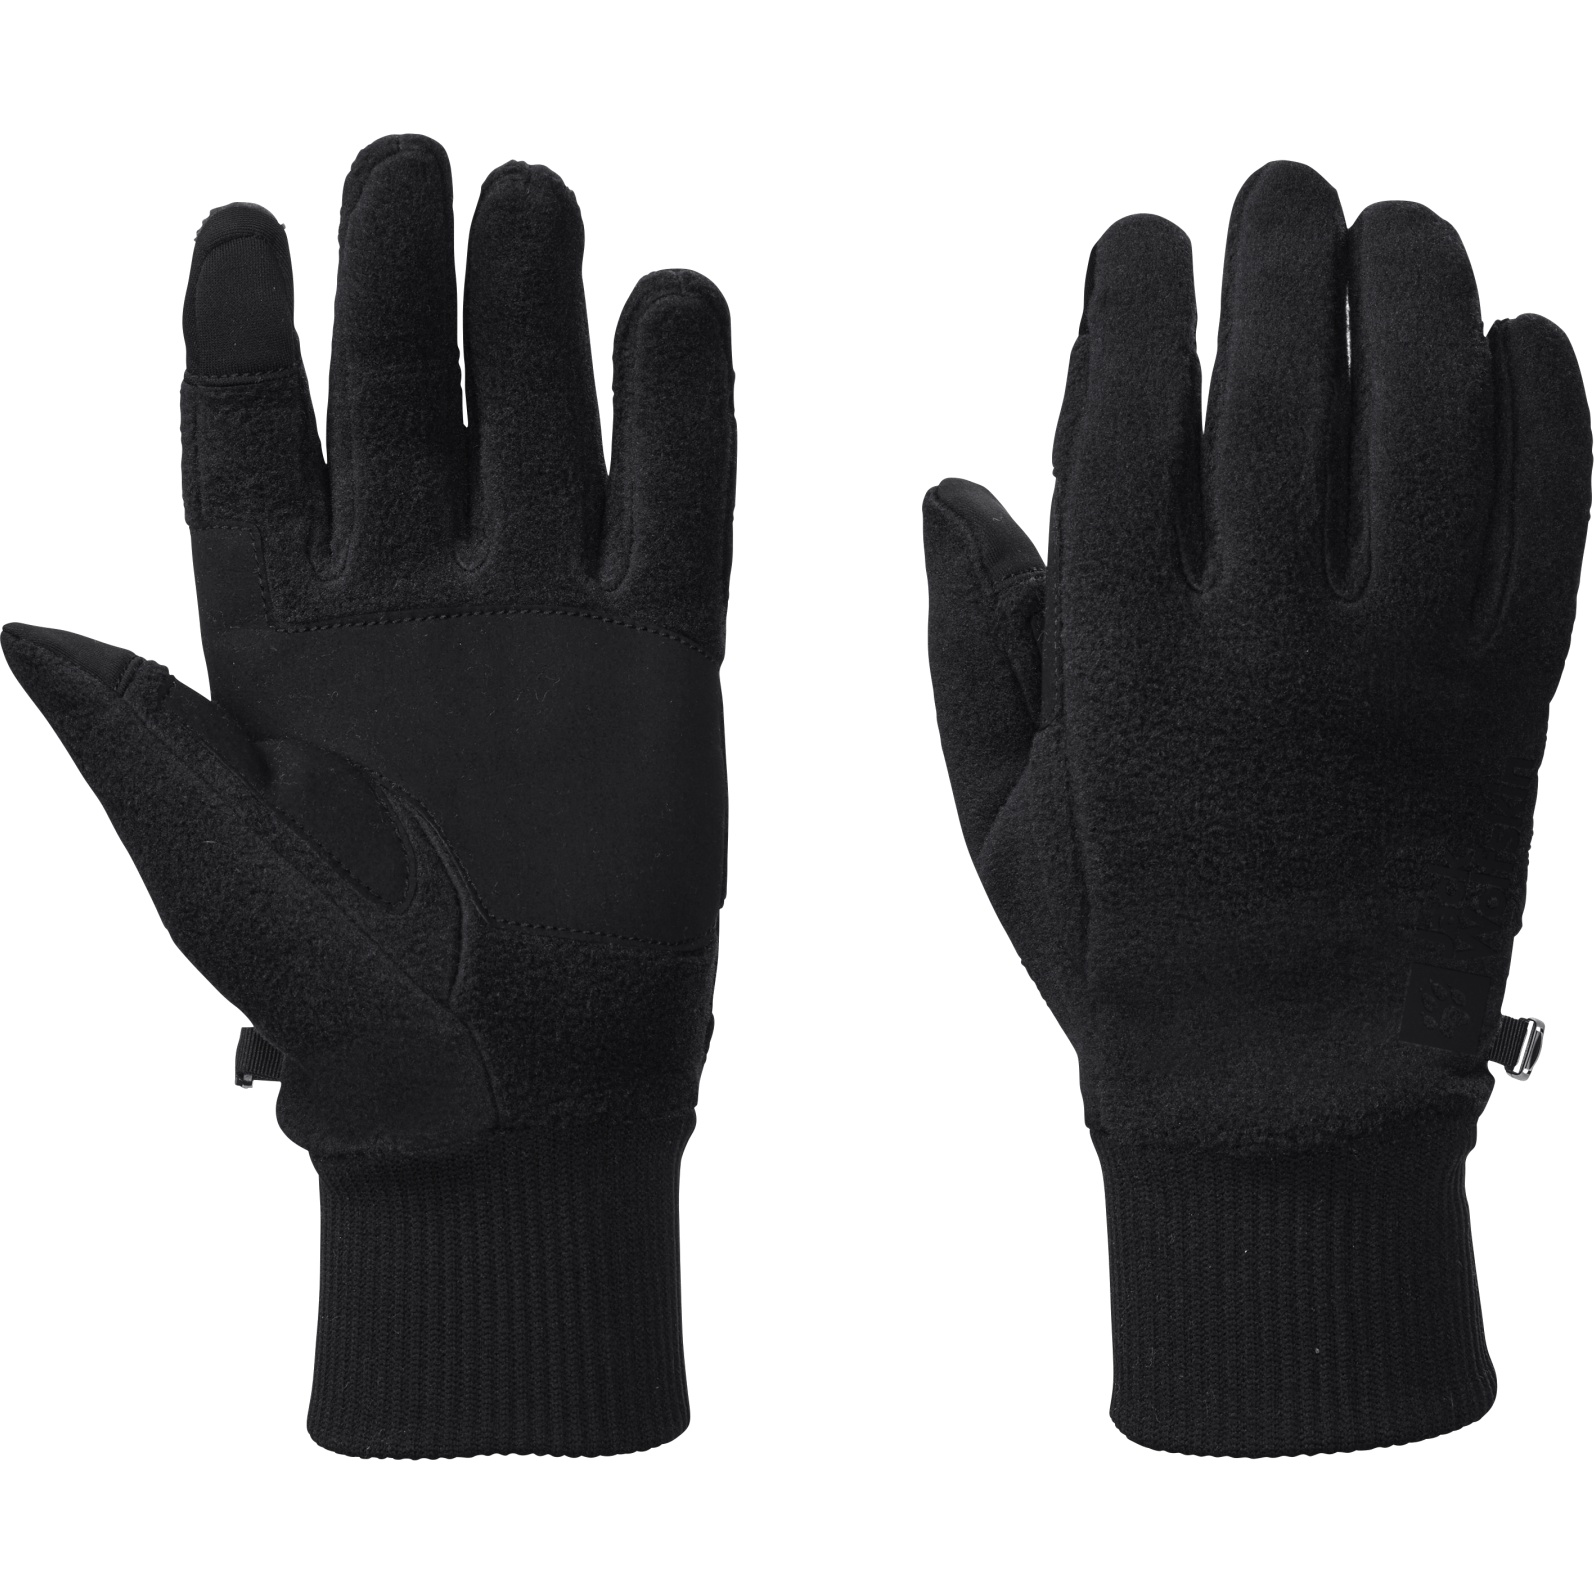 Picture of Jack Wolfskin Vertigo Gloves - black